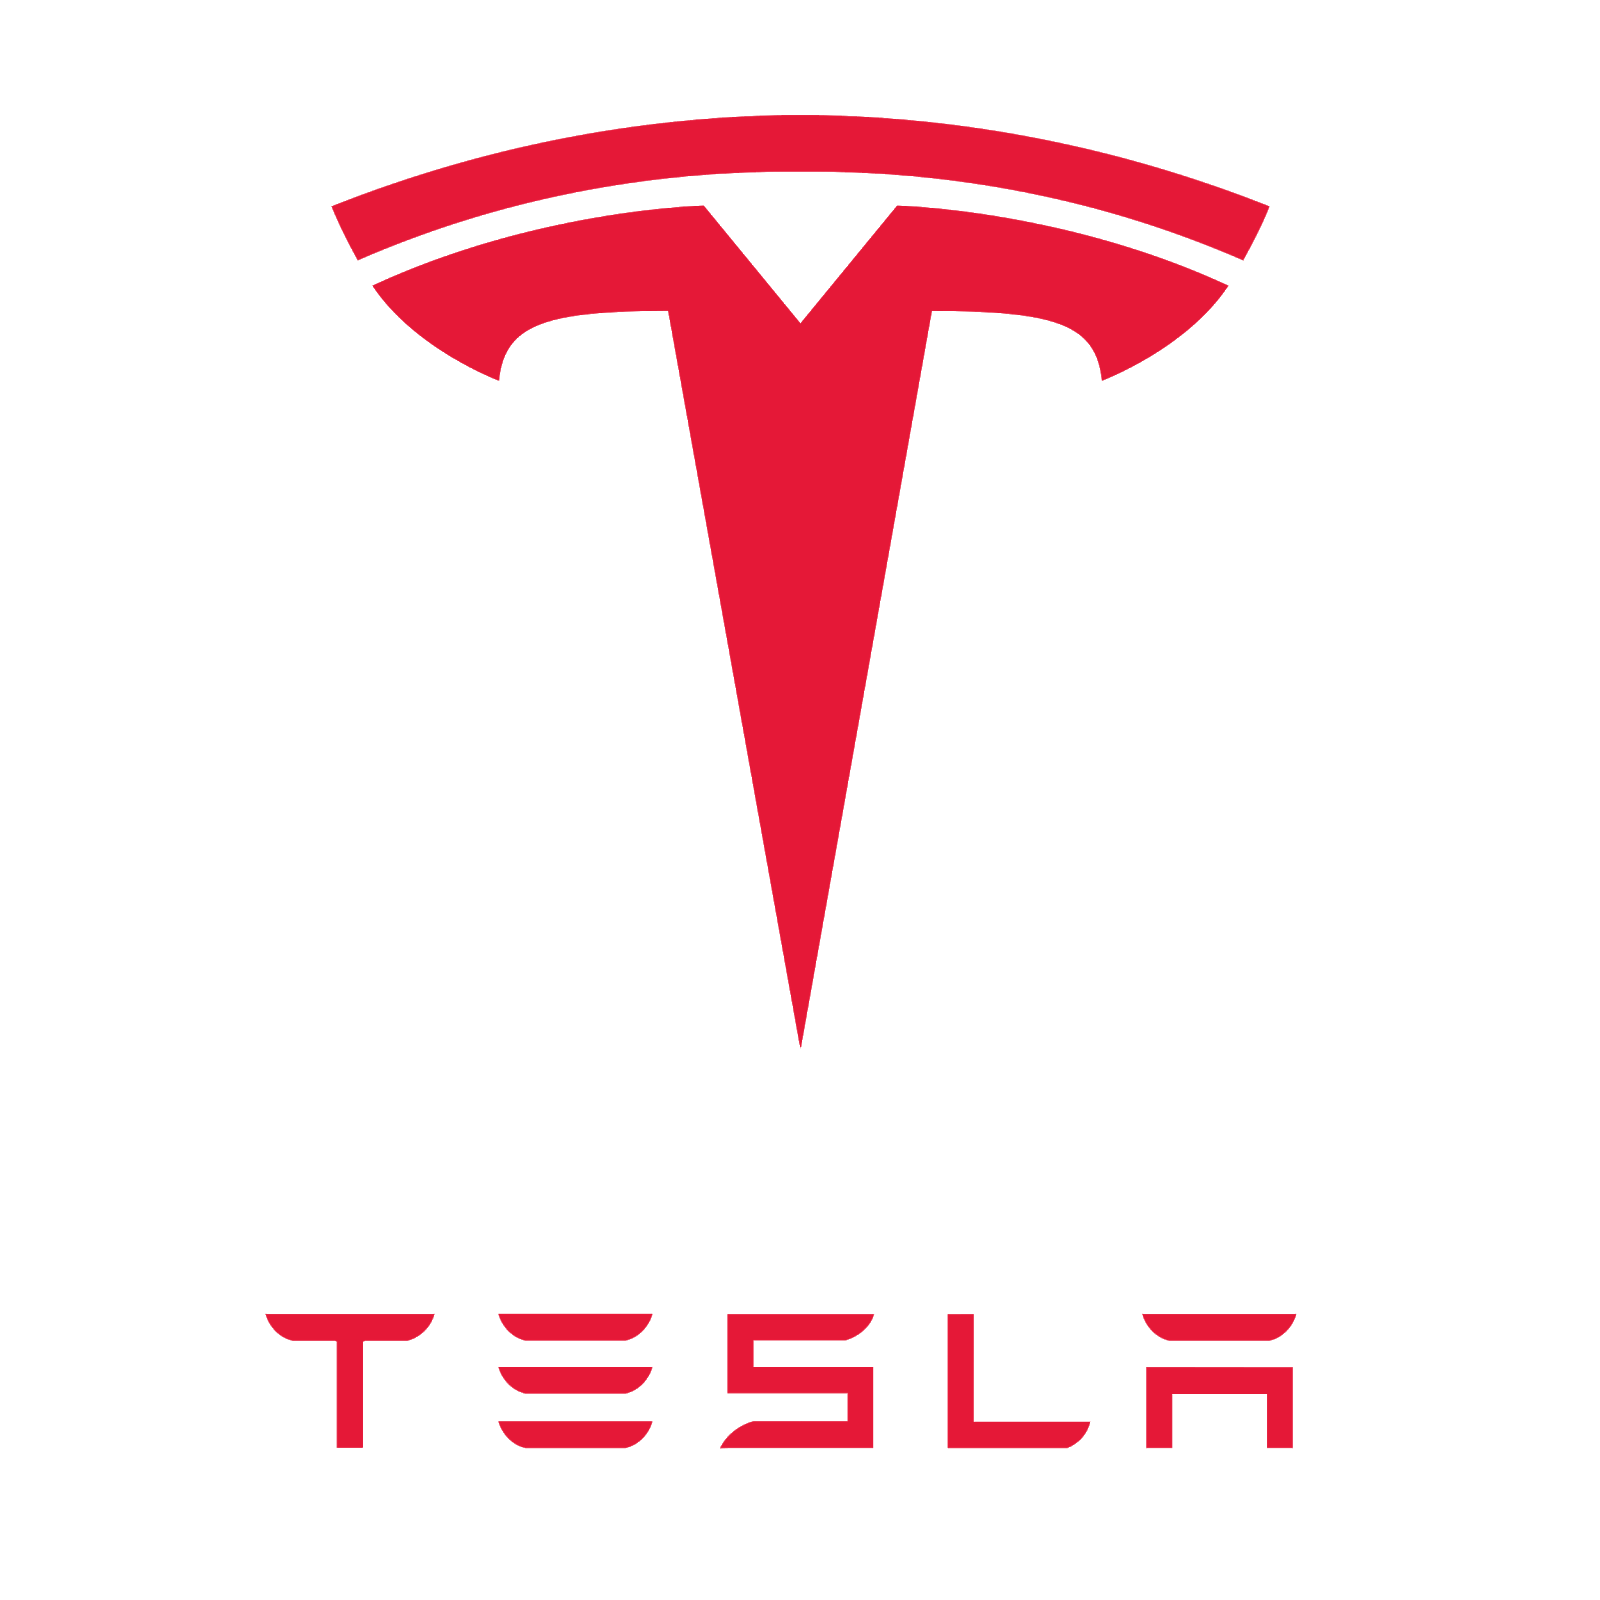 Tesla marketing strategy